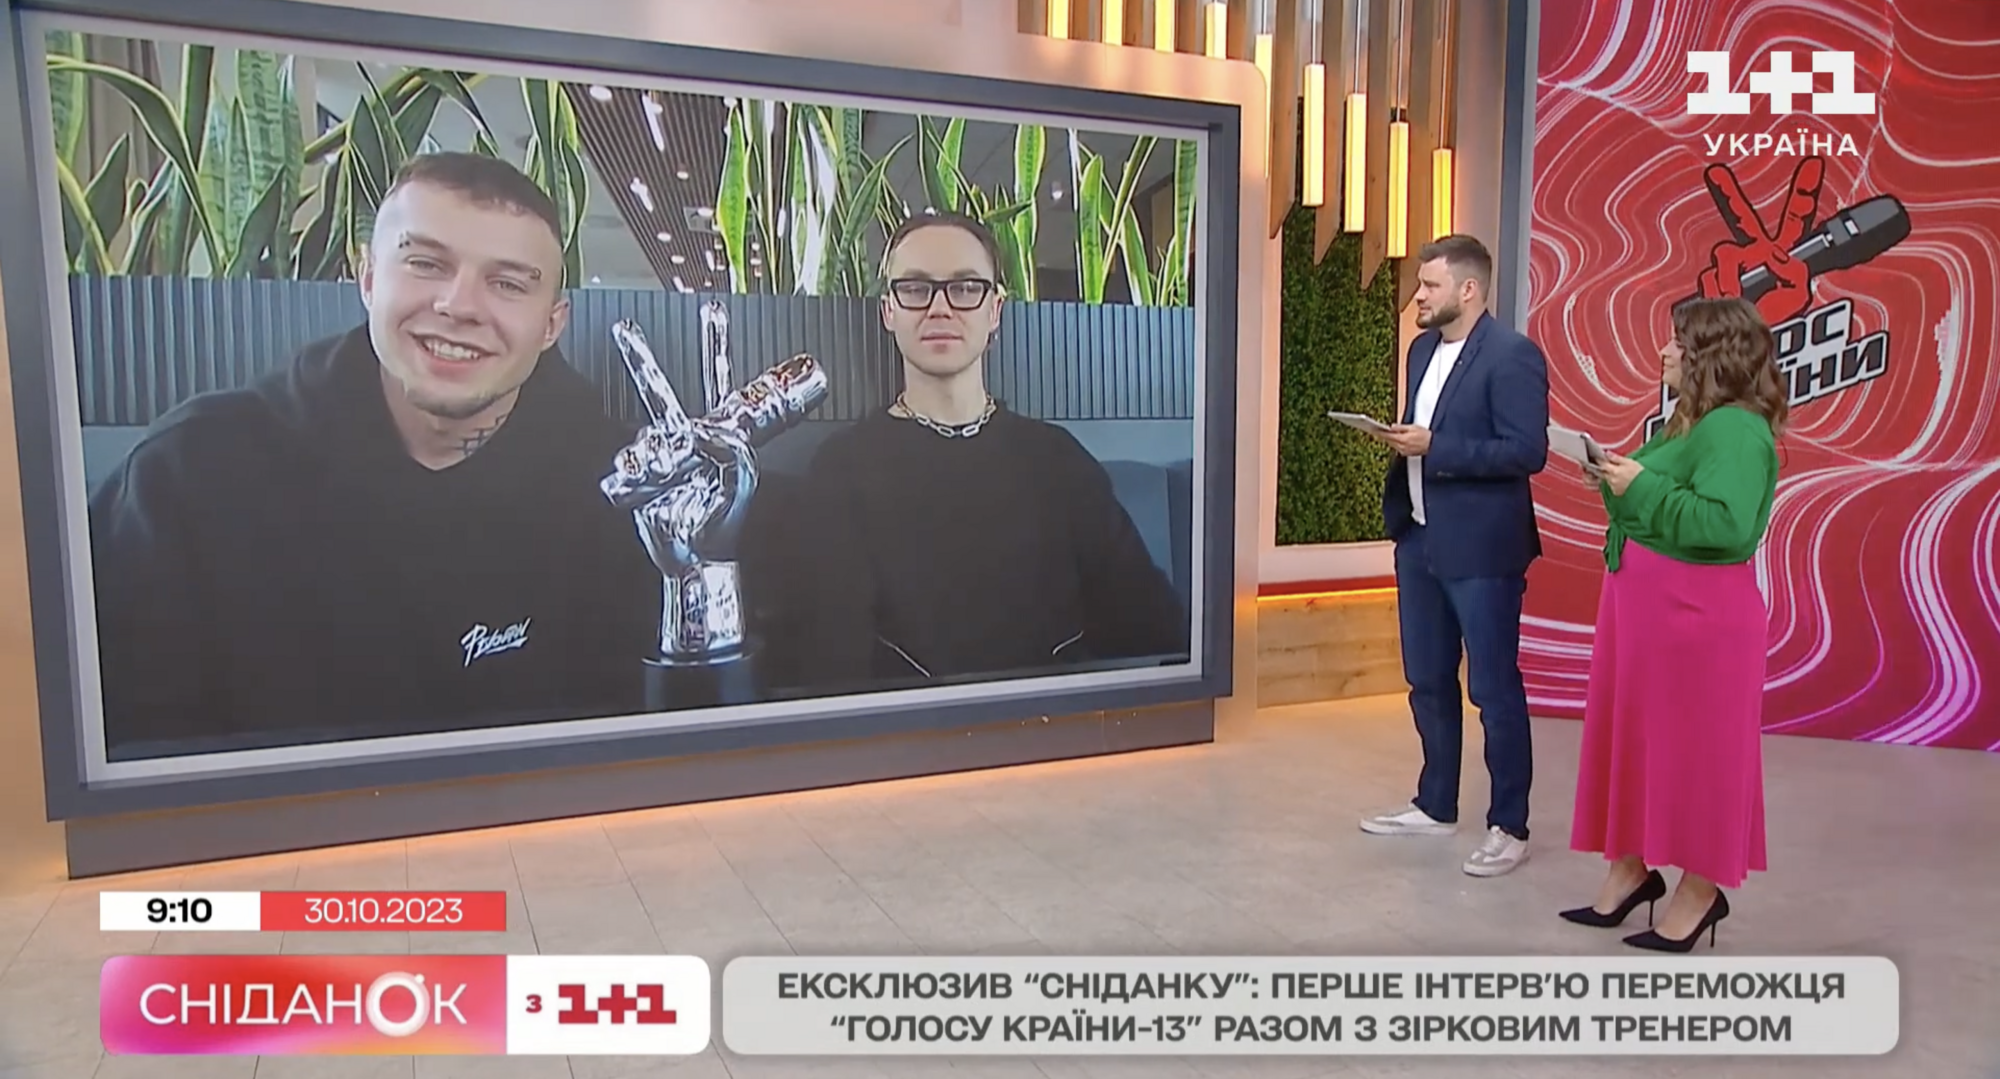 Переможець "Голосу країни-13" Михайло Панчишин і його тренер Артем Пивоваров відмовилися від кубку